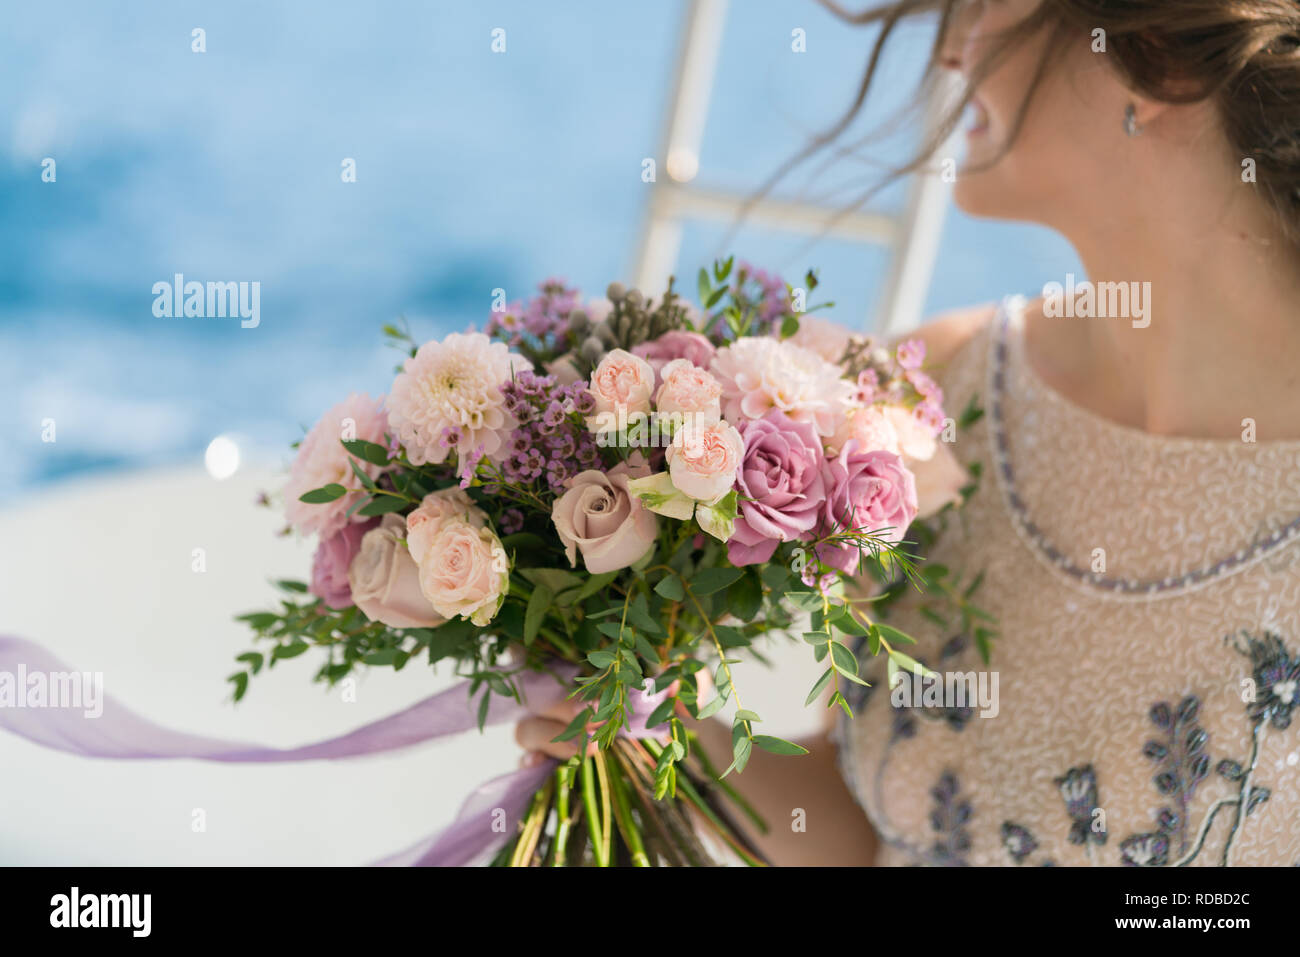 La sposa detiene una rosa e lilla Bouquet nozze nelle sue braccia contro lo sfondo del mare Foto Stock